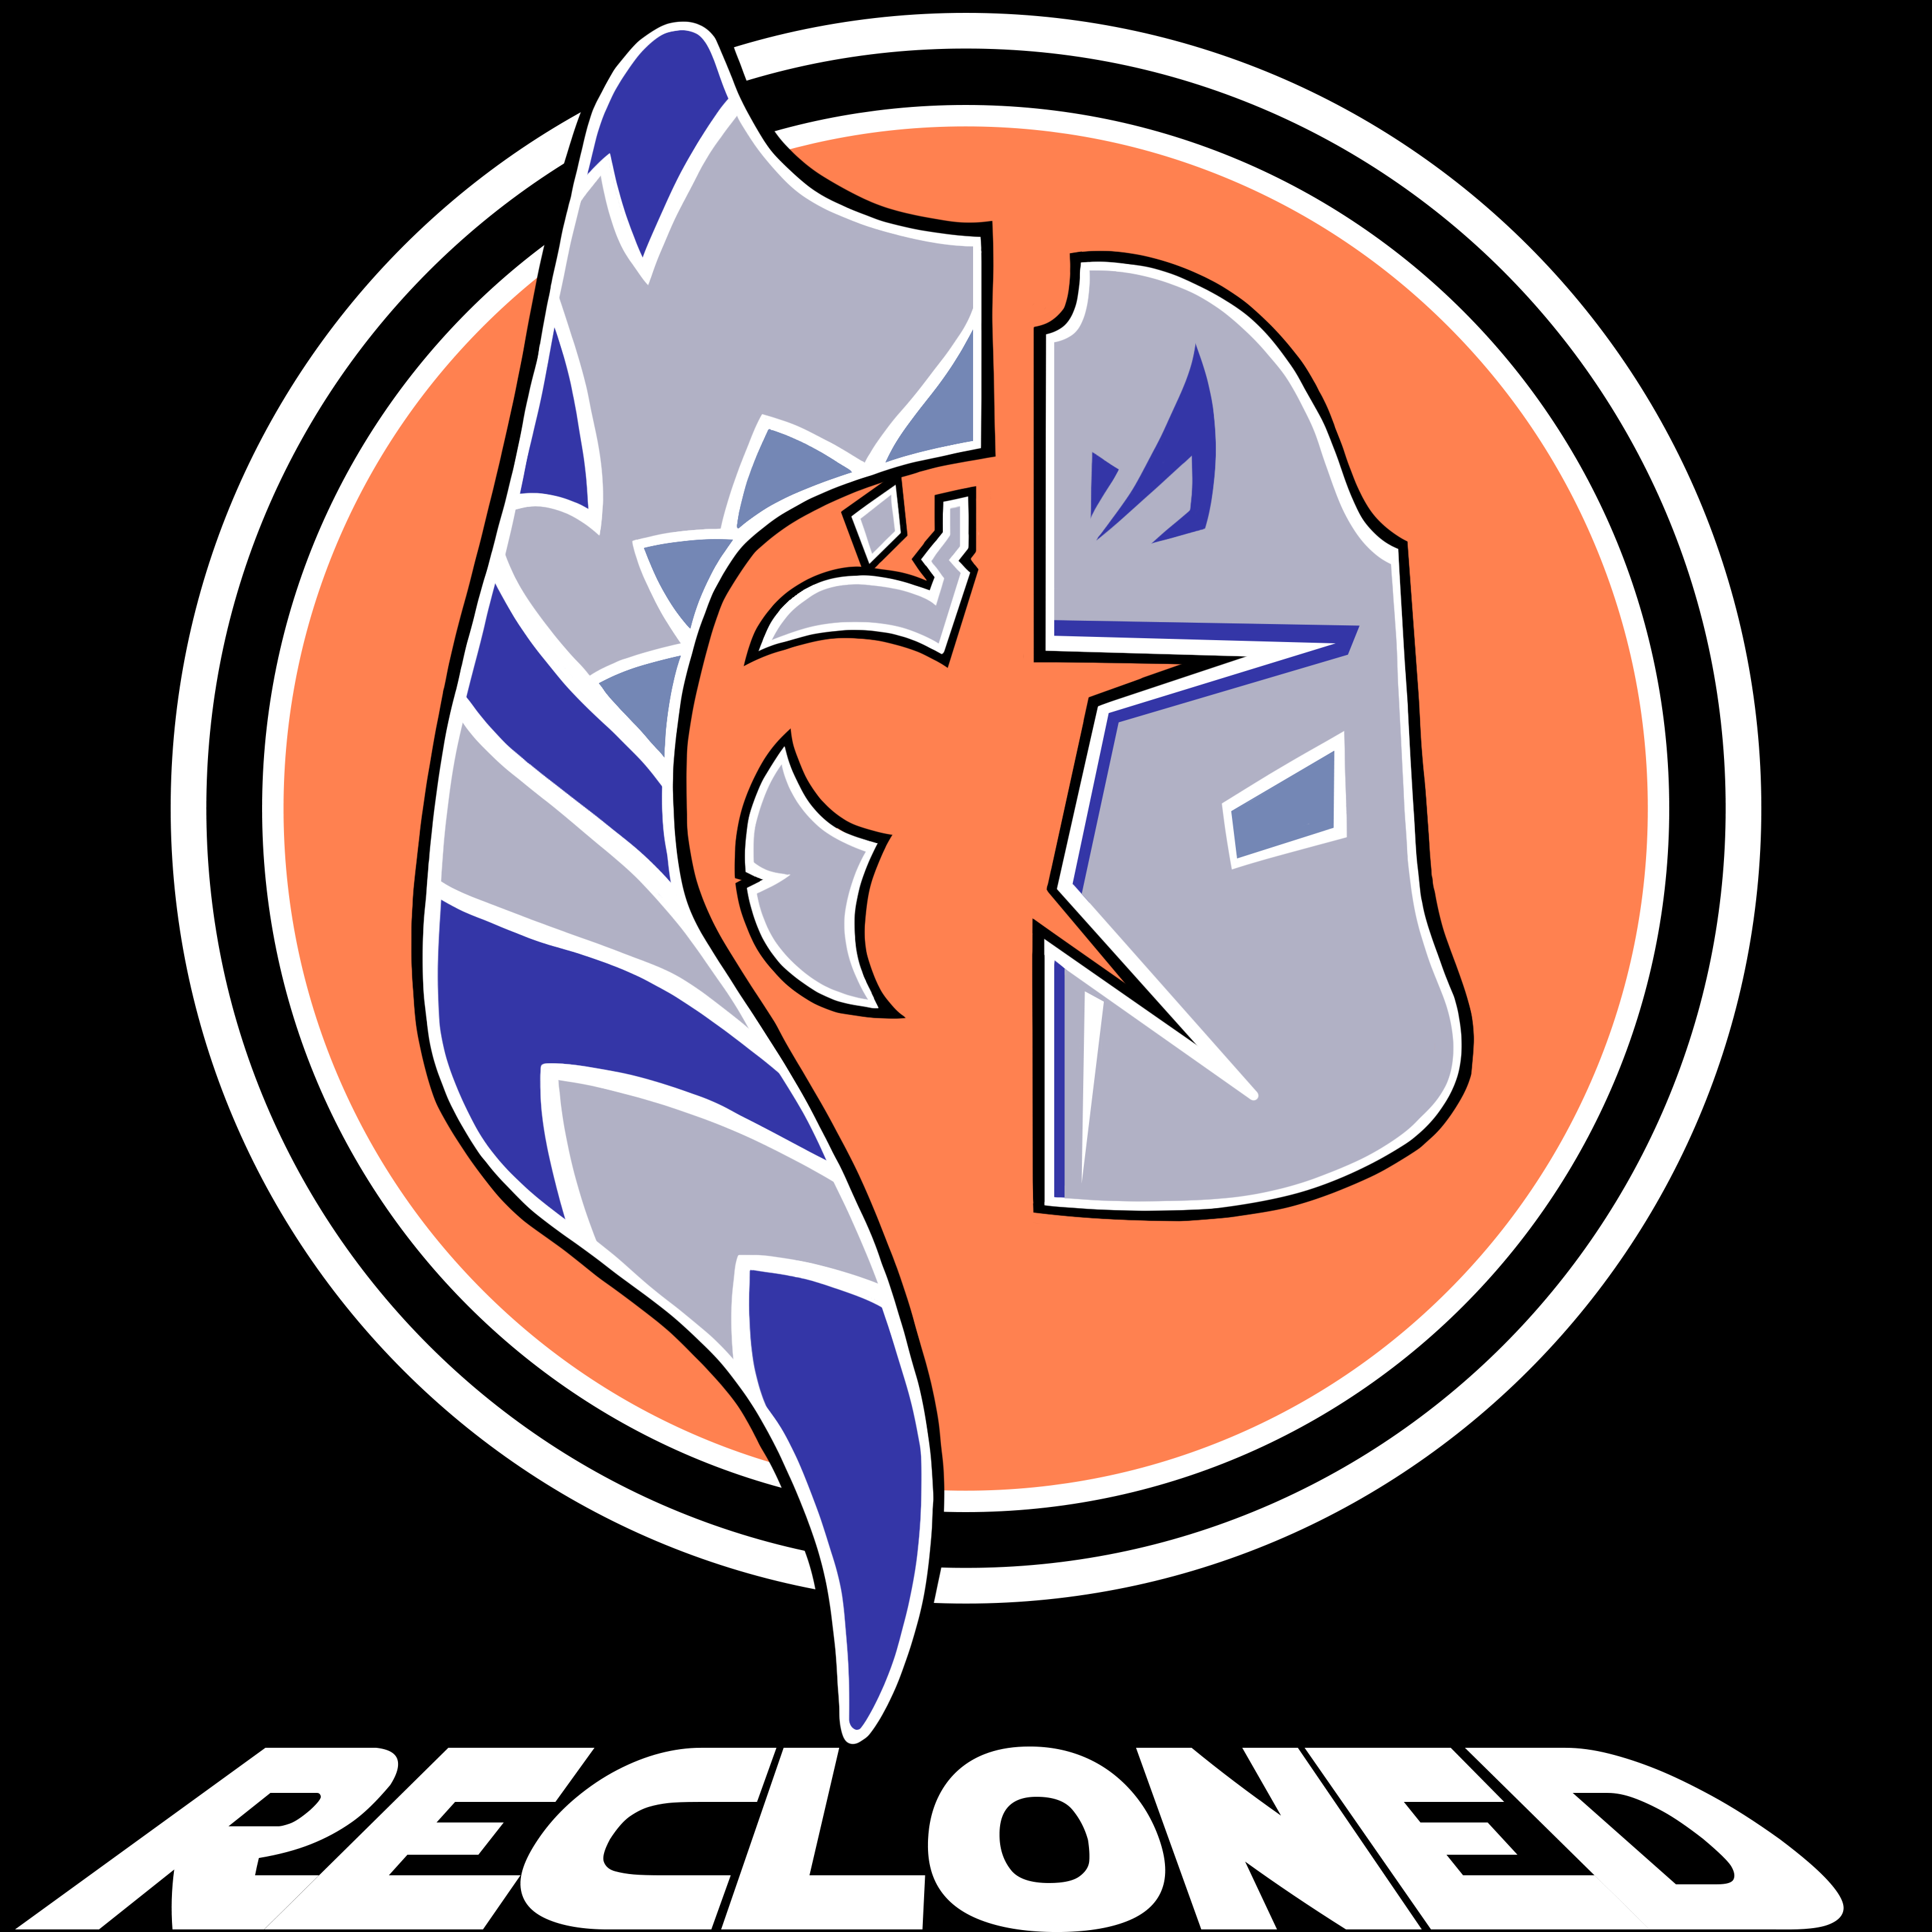 Recloned - Episode 1